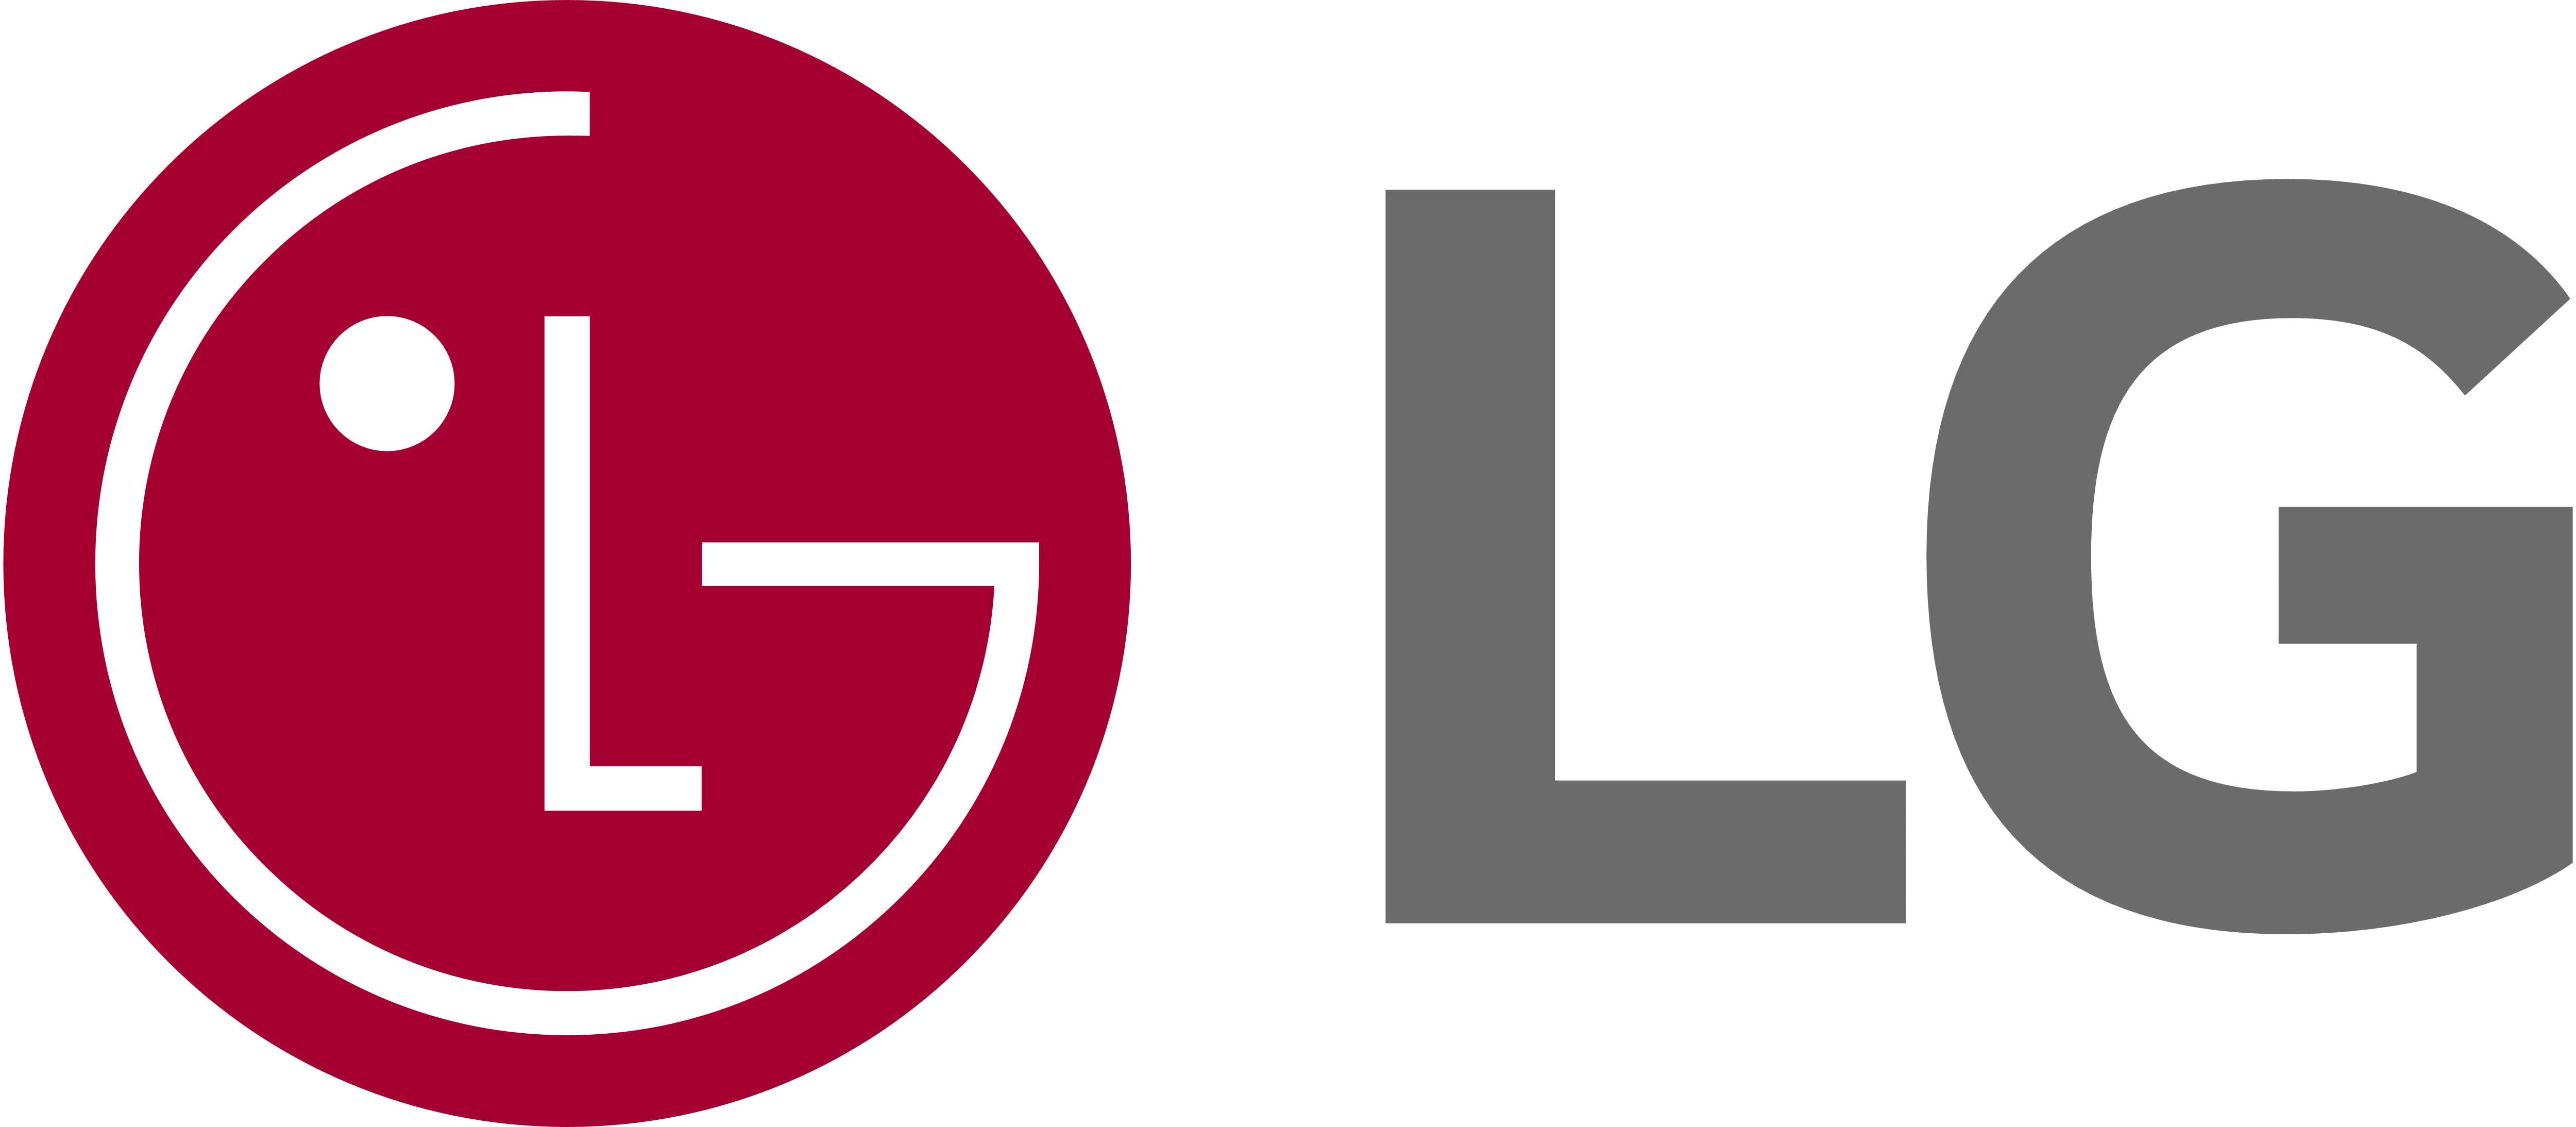 LG Local Dryer Repair, Maytag Dryer Repair